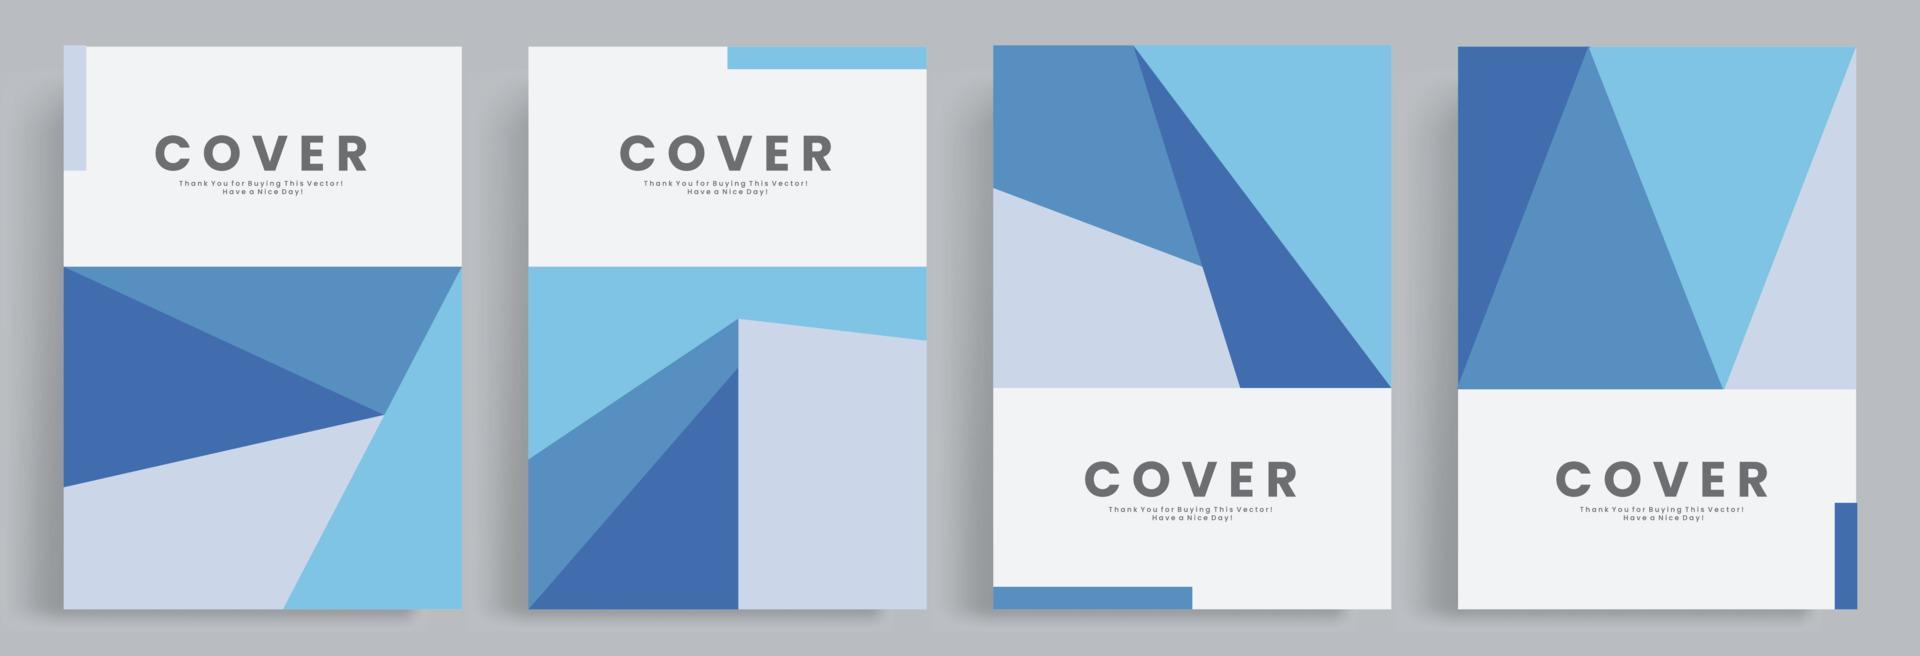 4 conjuntos de plantilla de cubierta geométrica azul abstracta. vector eps 10. adecuado para portadas de libros, carteles, decoraciones, plantilla web, presentación, folletos, folleto, tarjeta de invitación, etc.